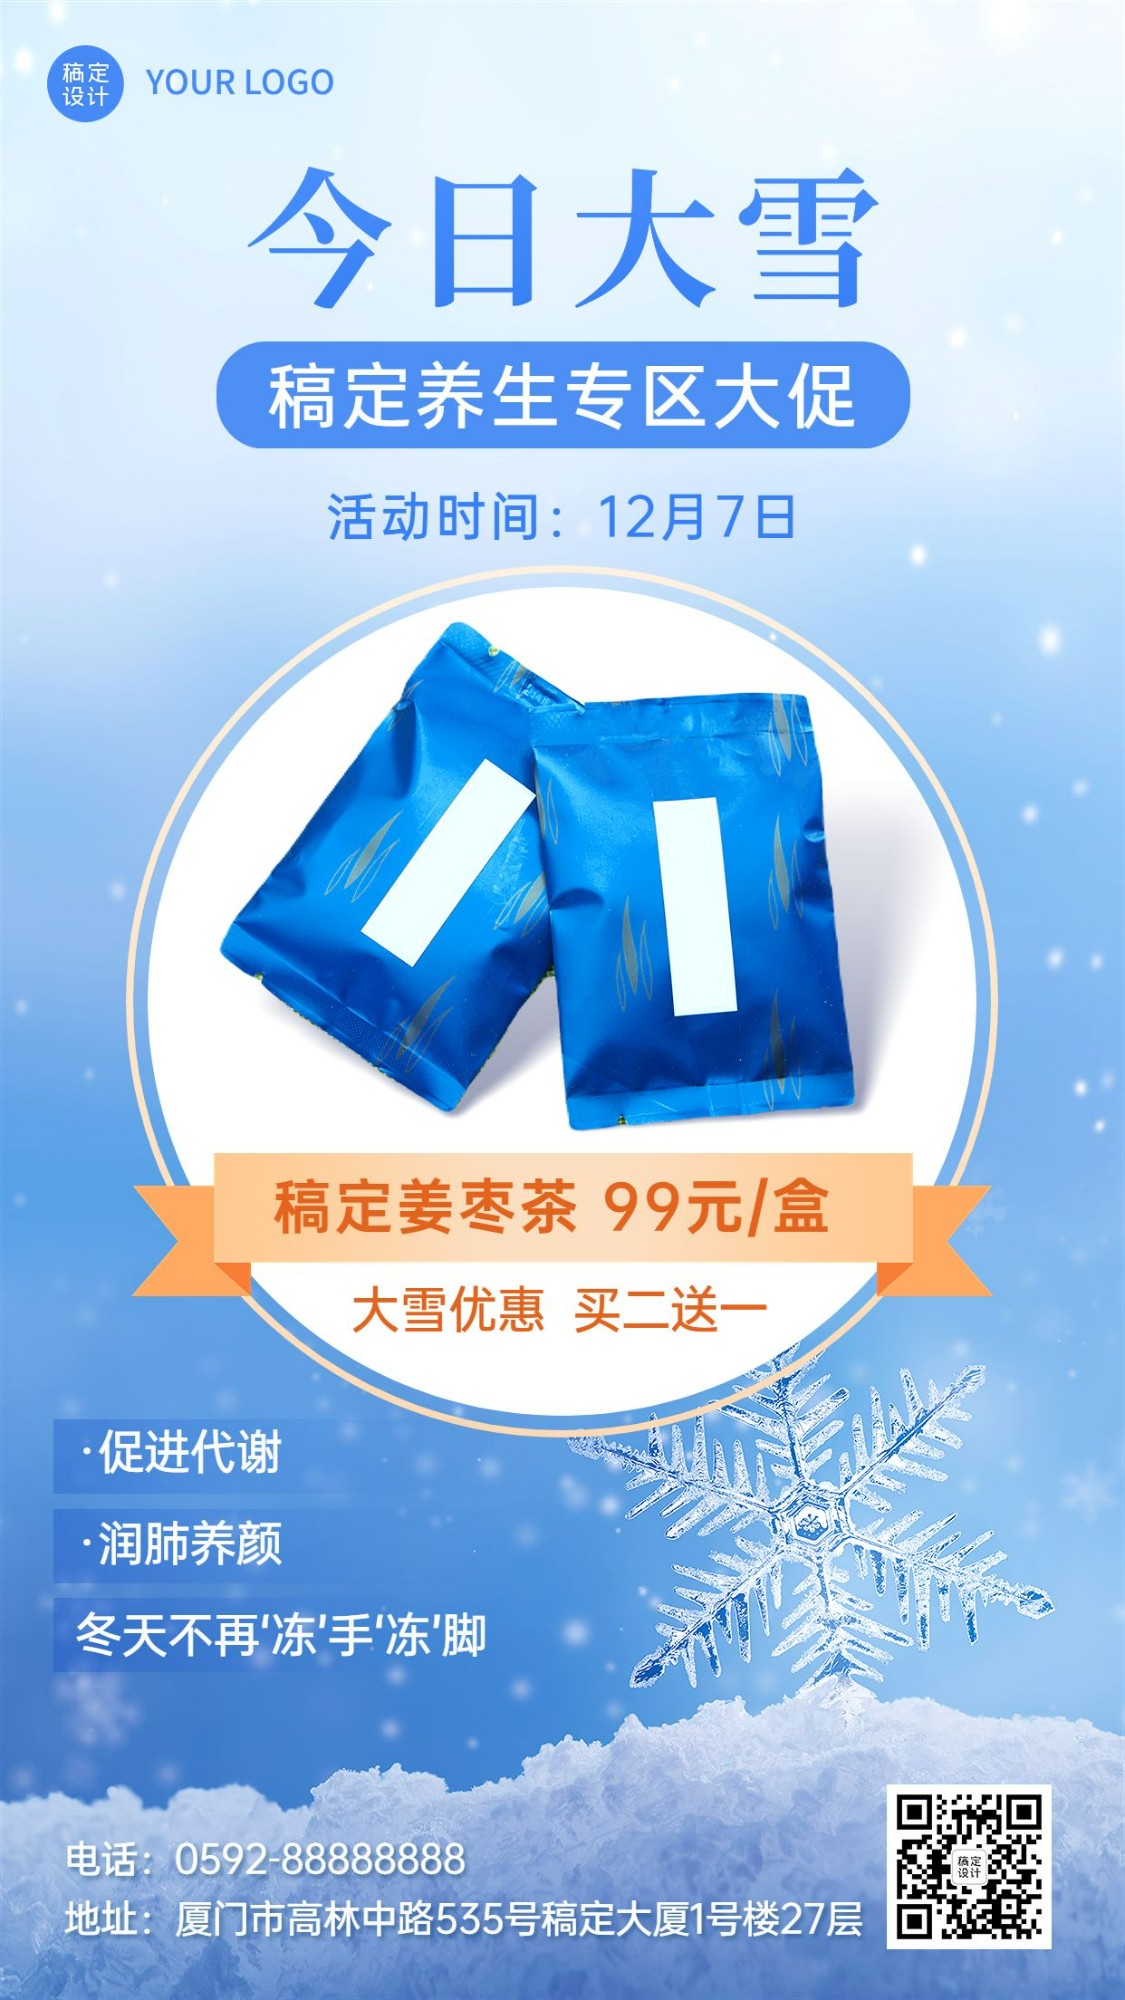 微商大雪节气养生保健产品展示营销手机海报预览效果